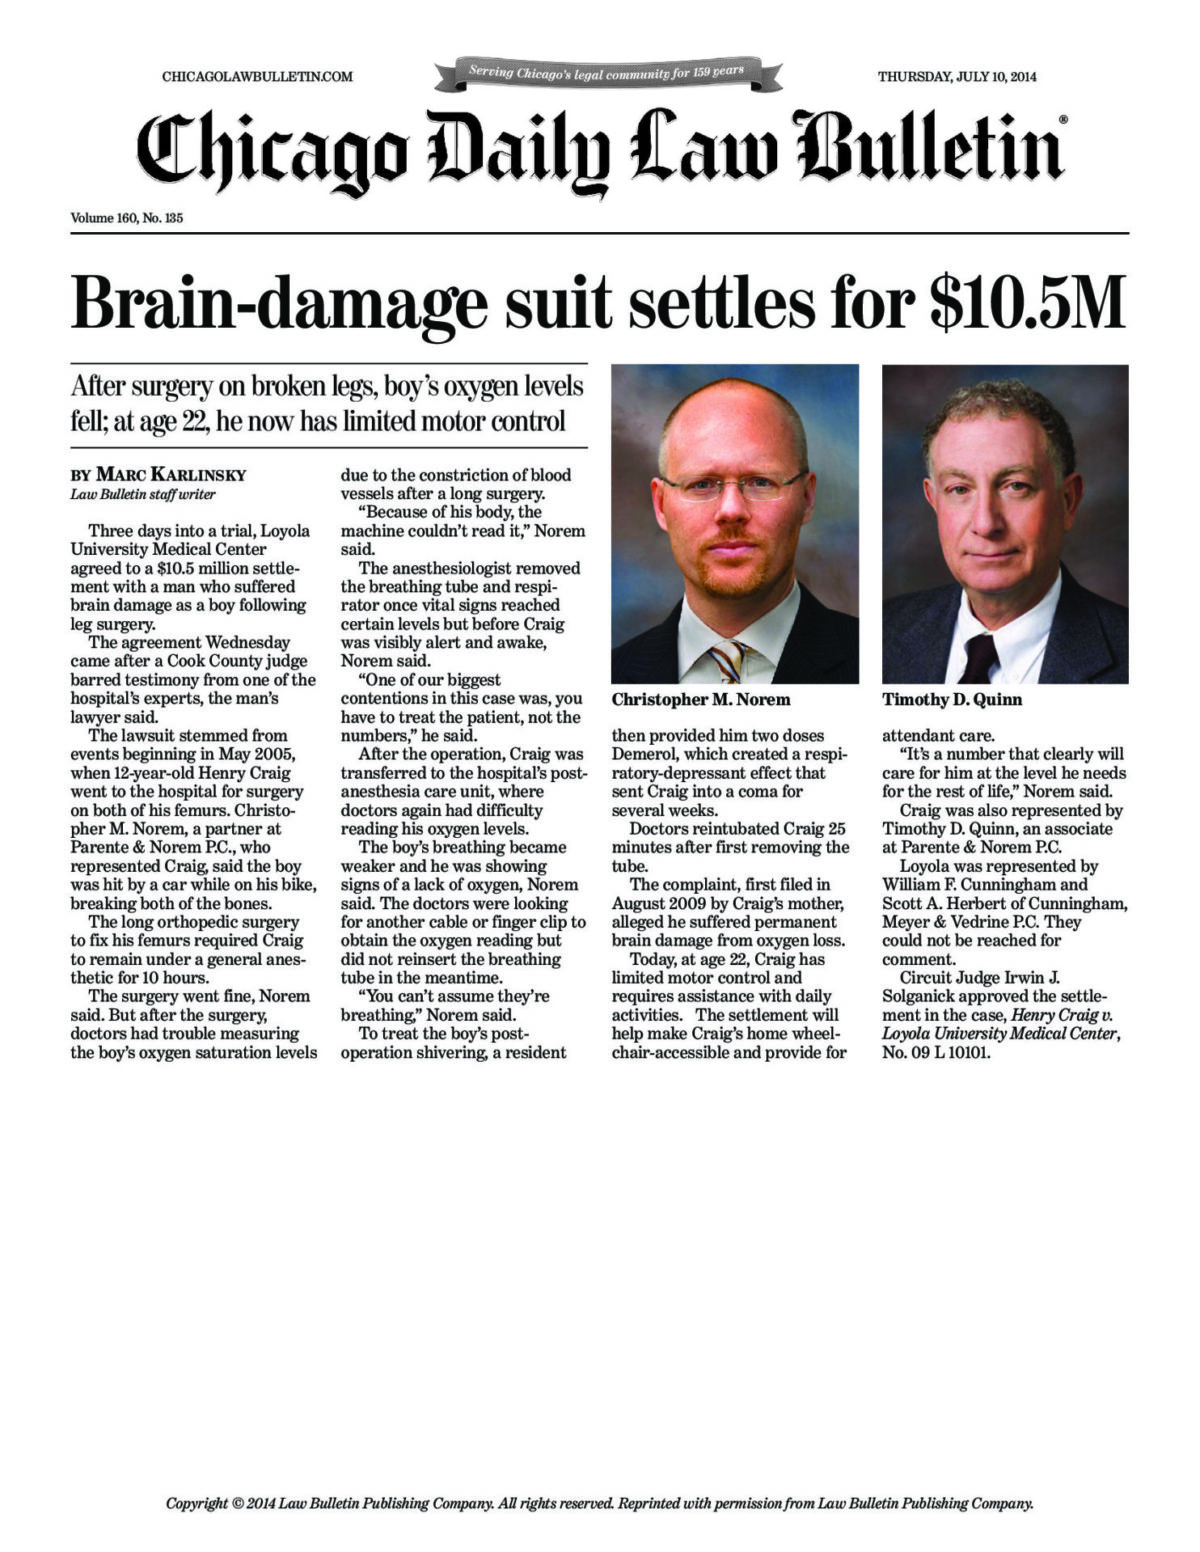 Brain-damage suit settles for $10.5M